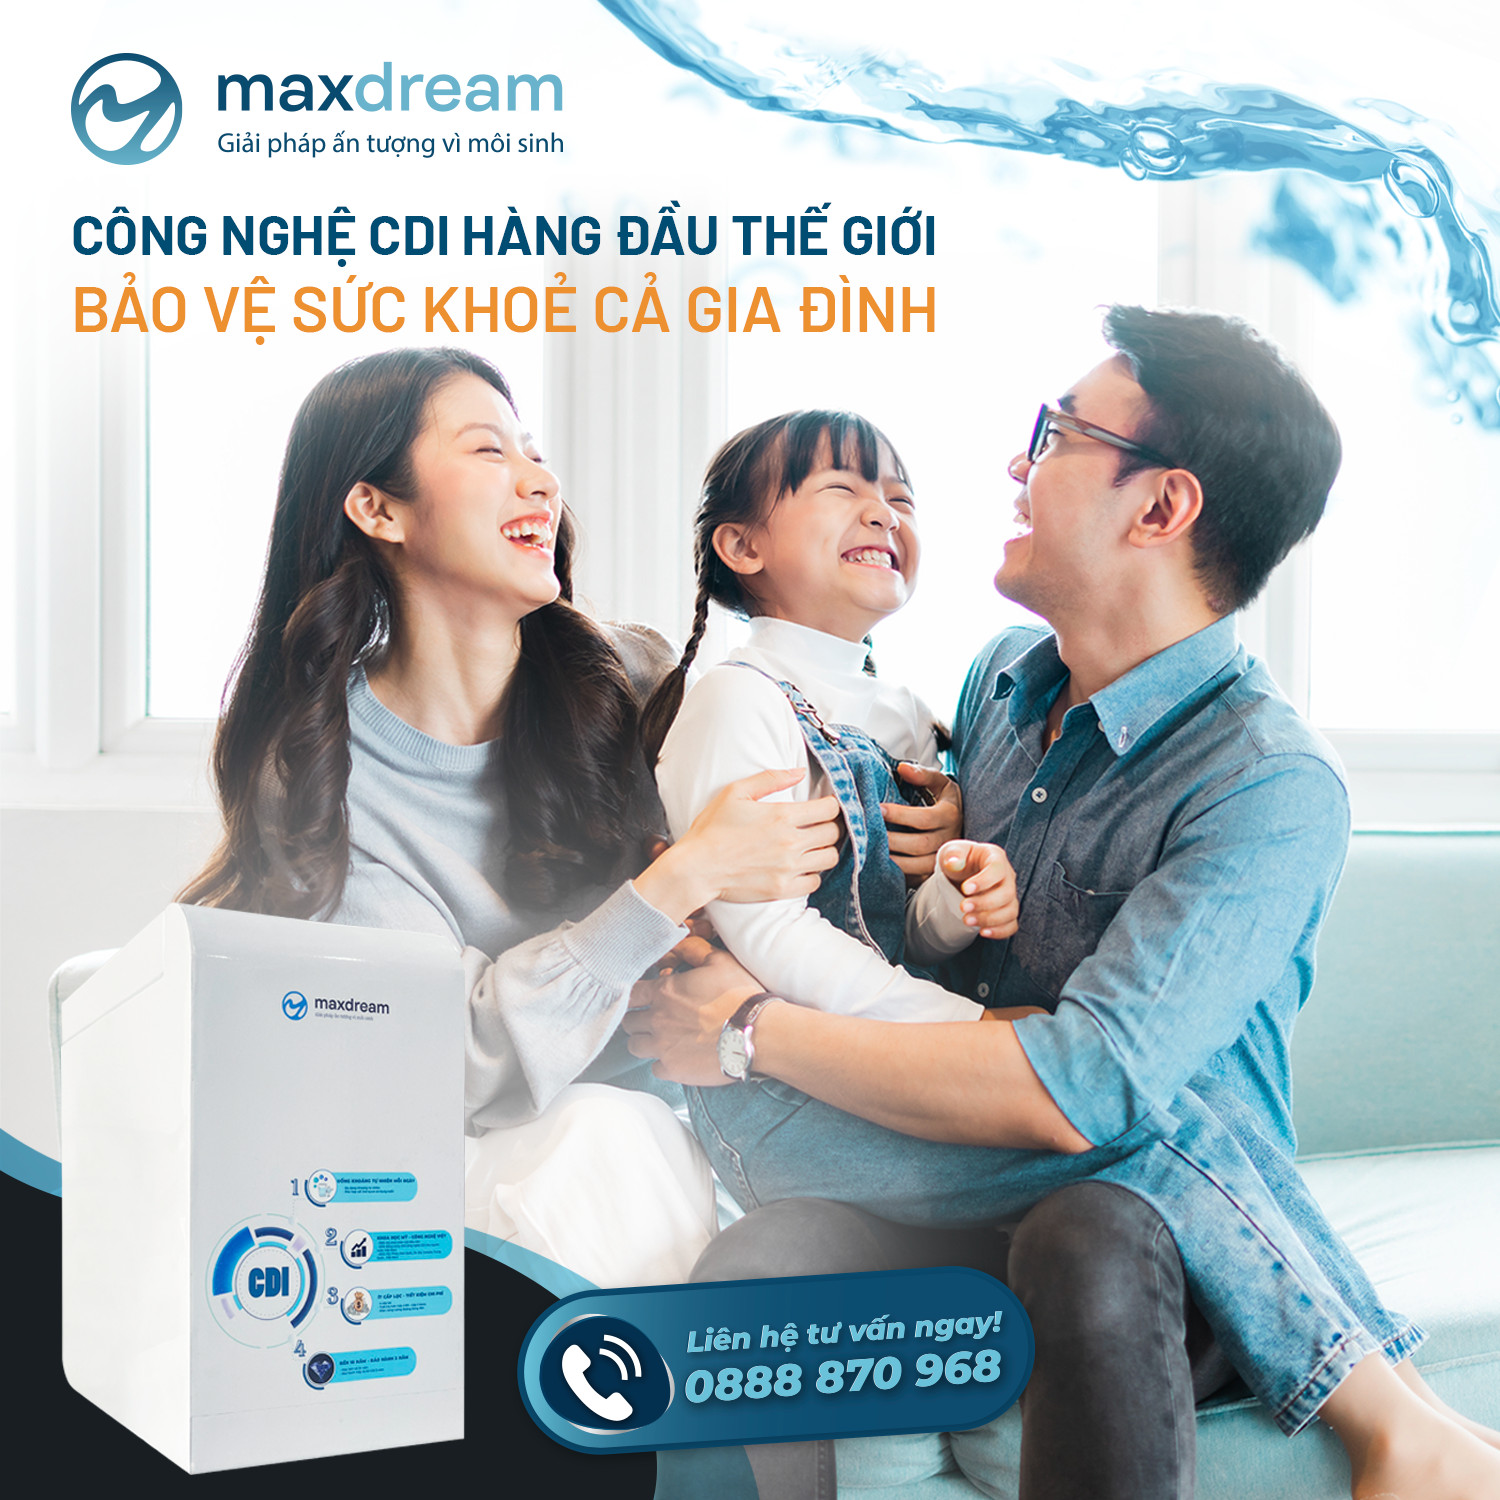 Máy lọc nước Maxdream DB01 sử dụng công nghệ lọc CDI tiên tiến